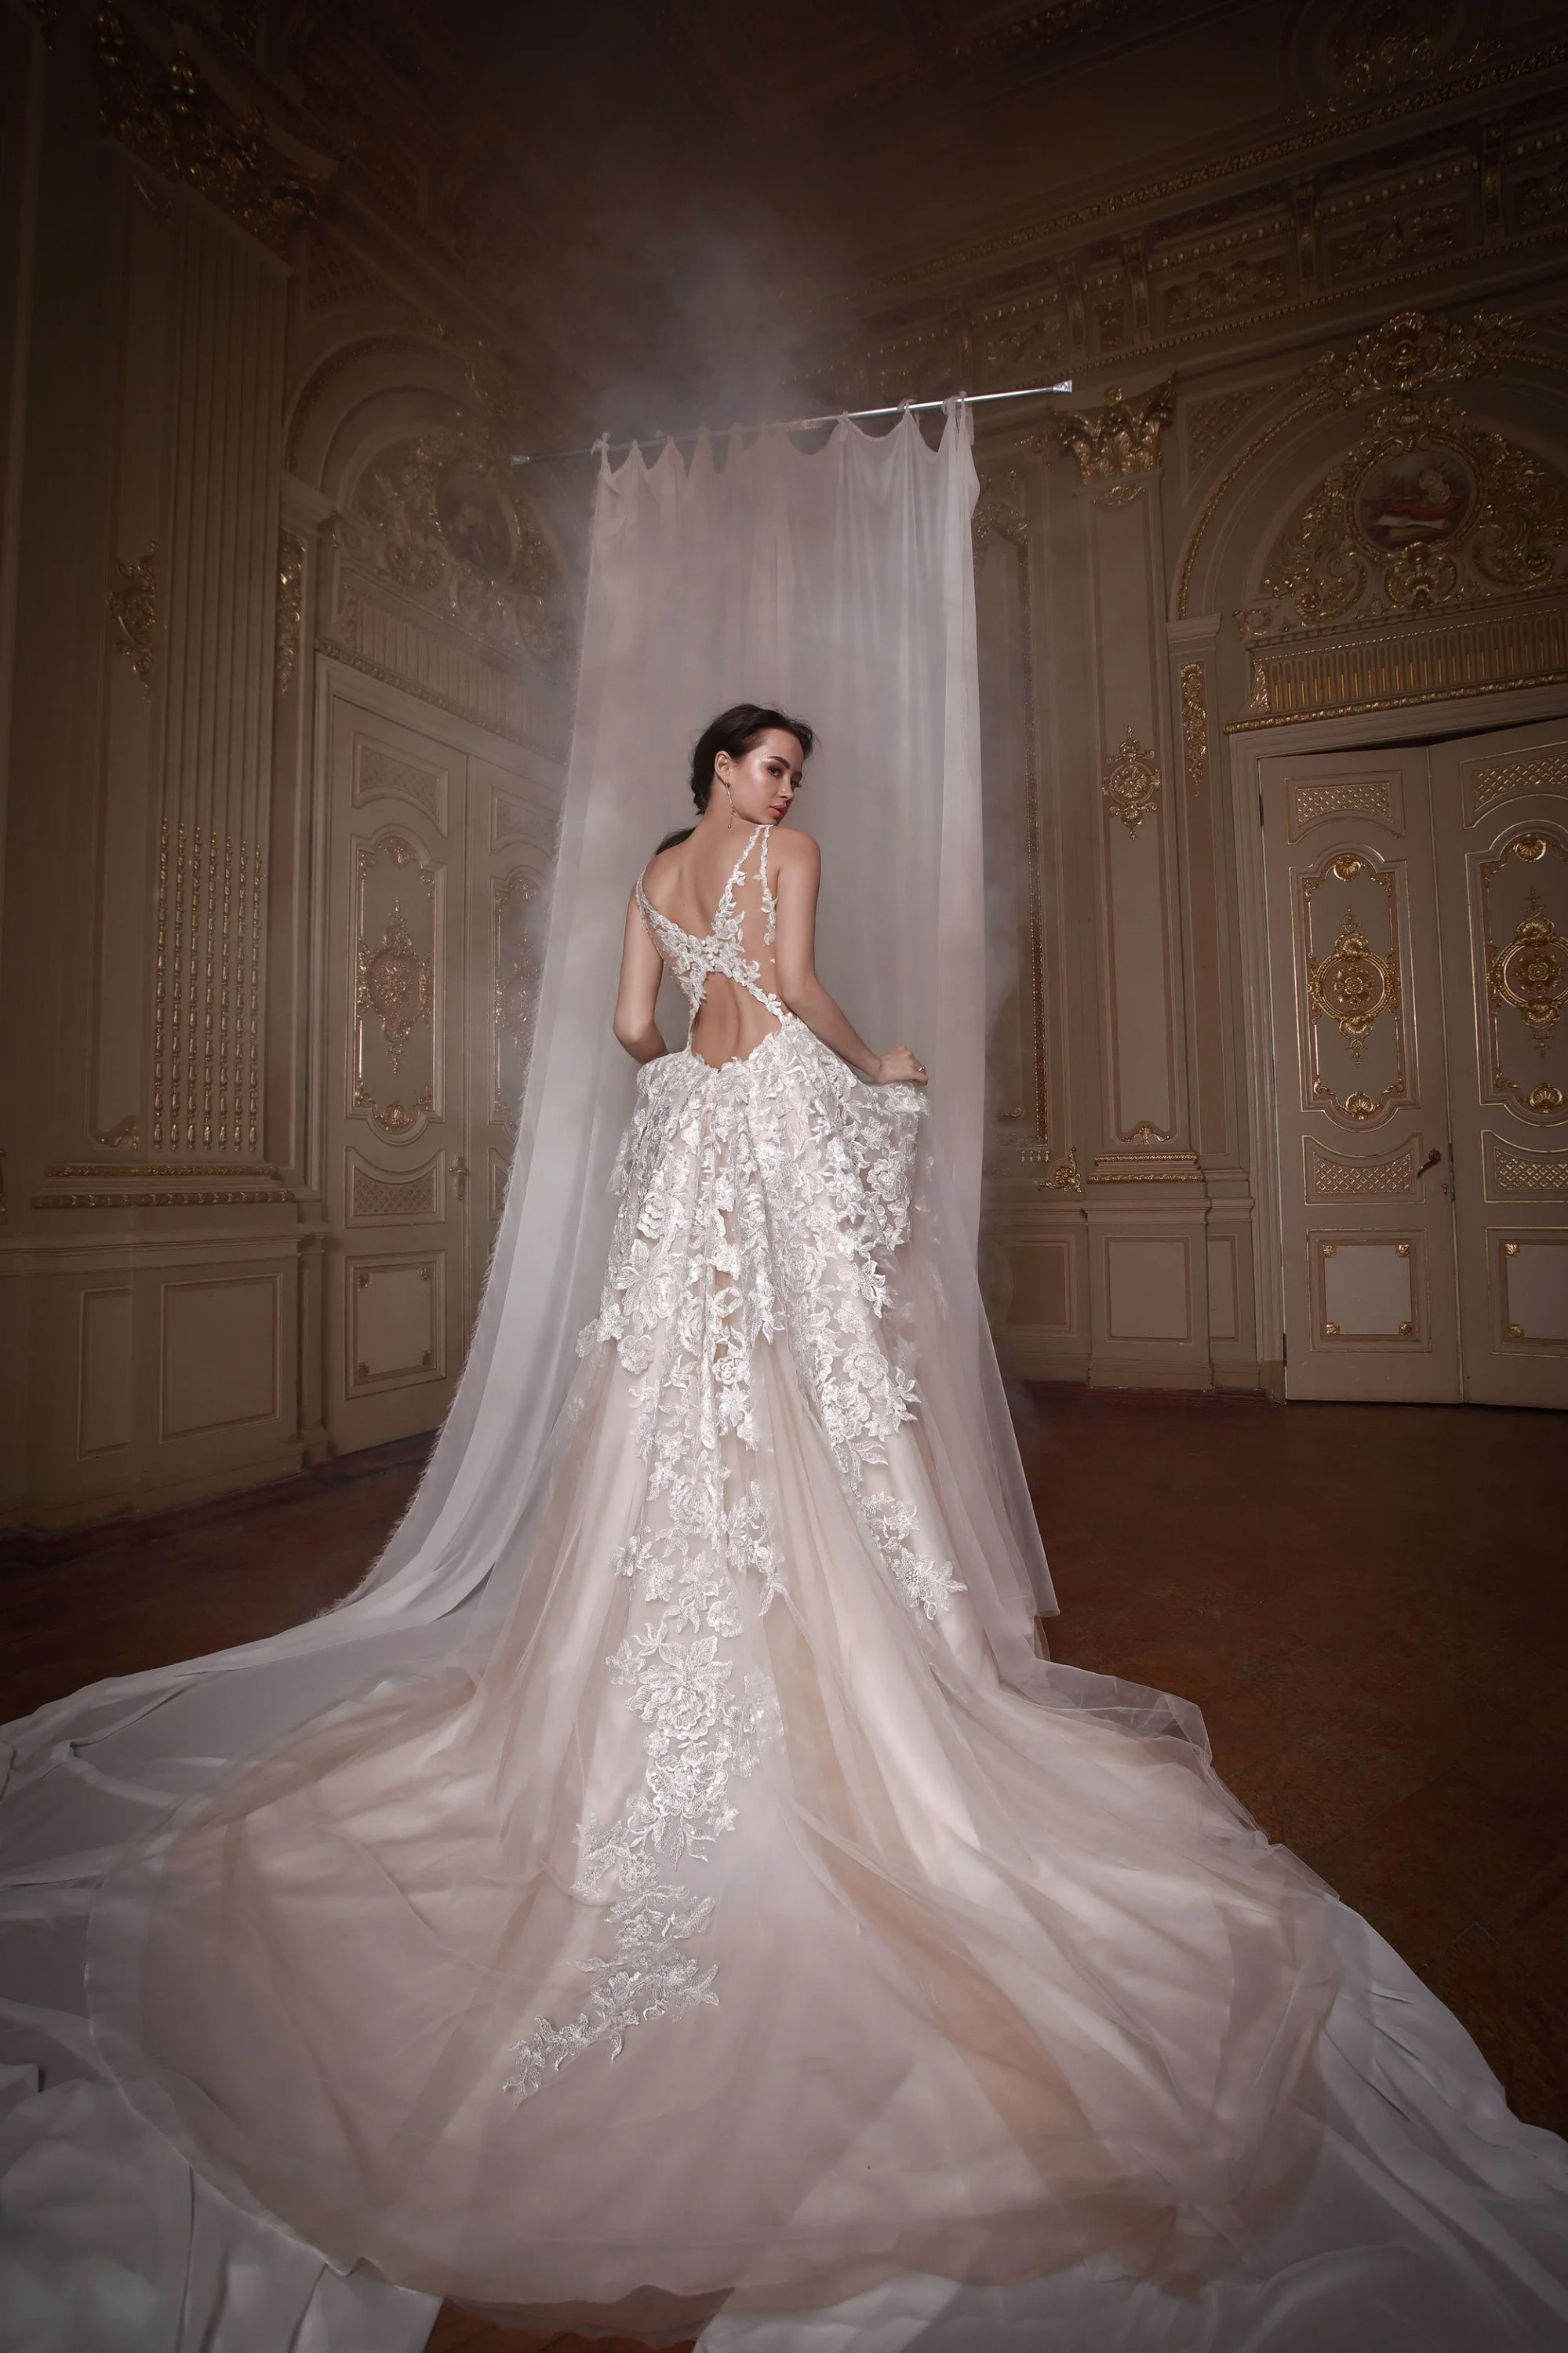 Злата Огневич и Анна Буткевич примеряли роскошные свадебные платья от Андре Тана - фото 425441